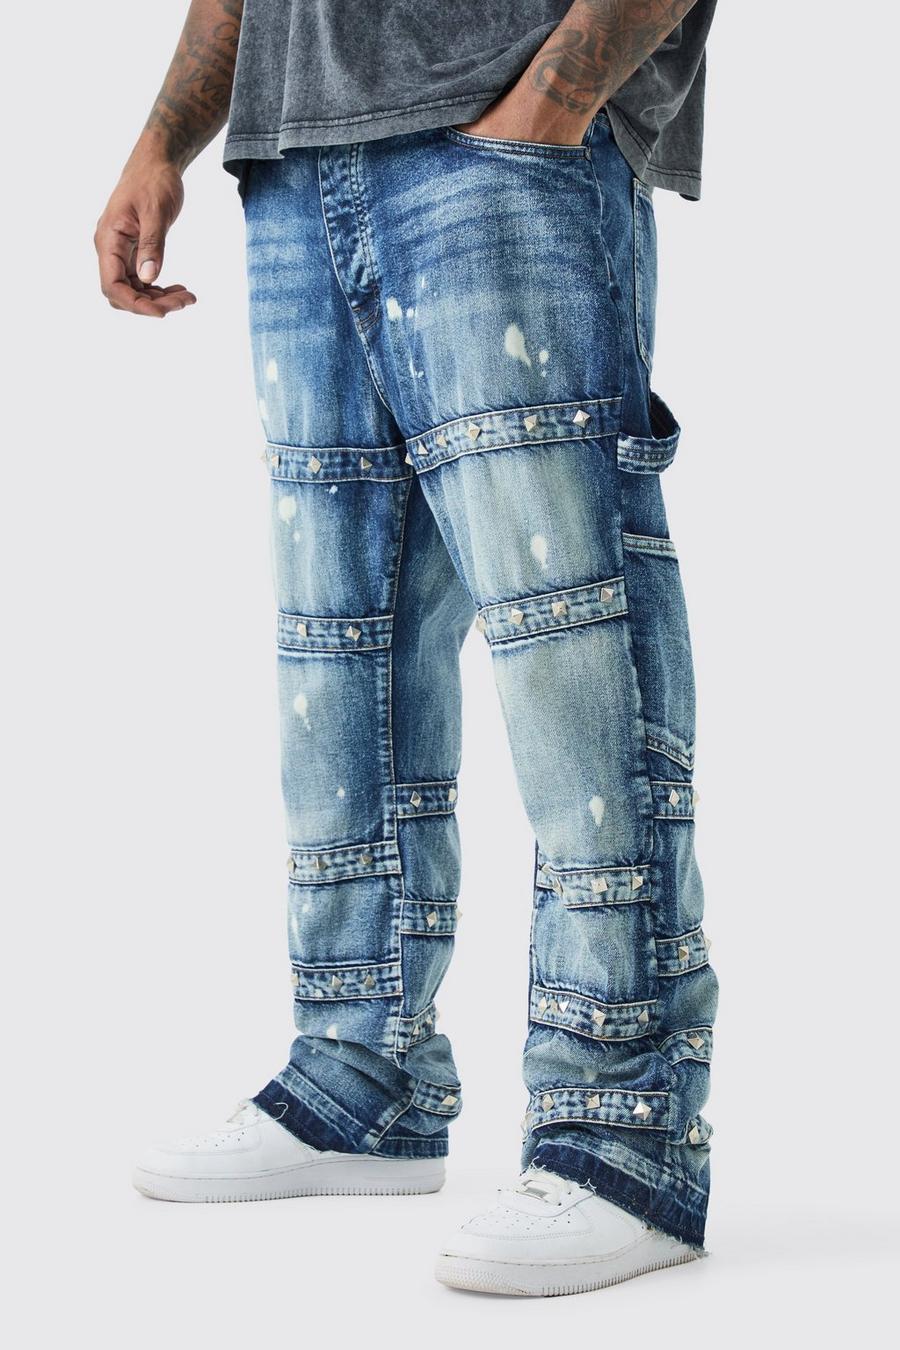 Jeans Plus Size Slim Fit in denim rigido con spalline decorate e dettagli a zampa, Antique blue image number 1